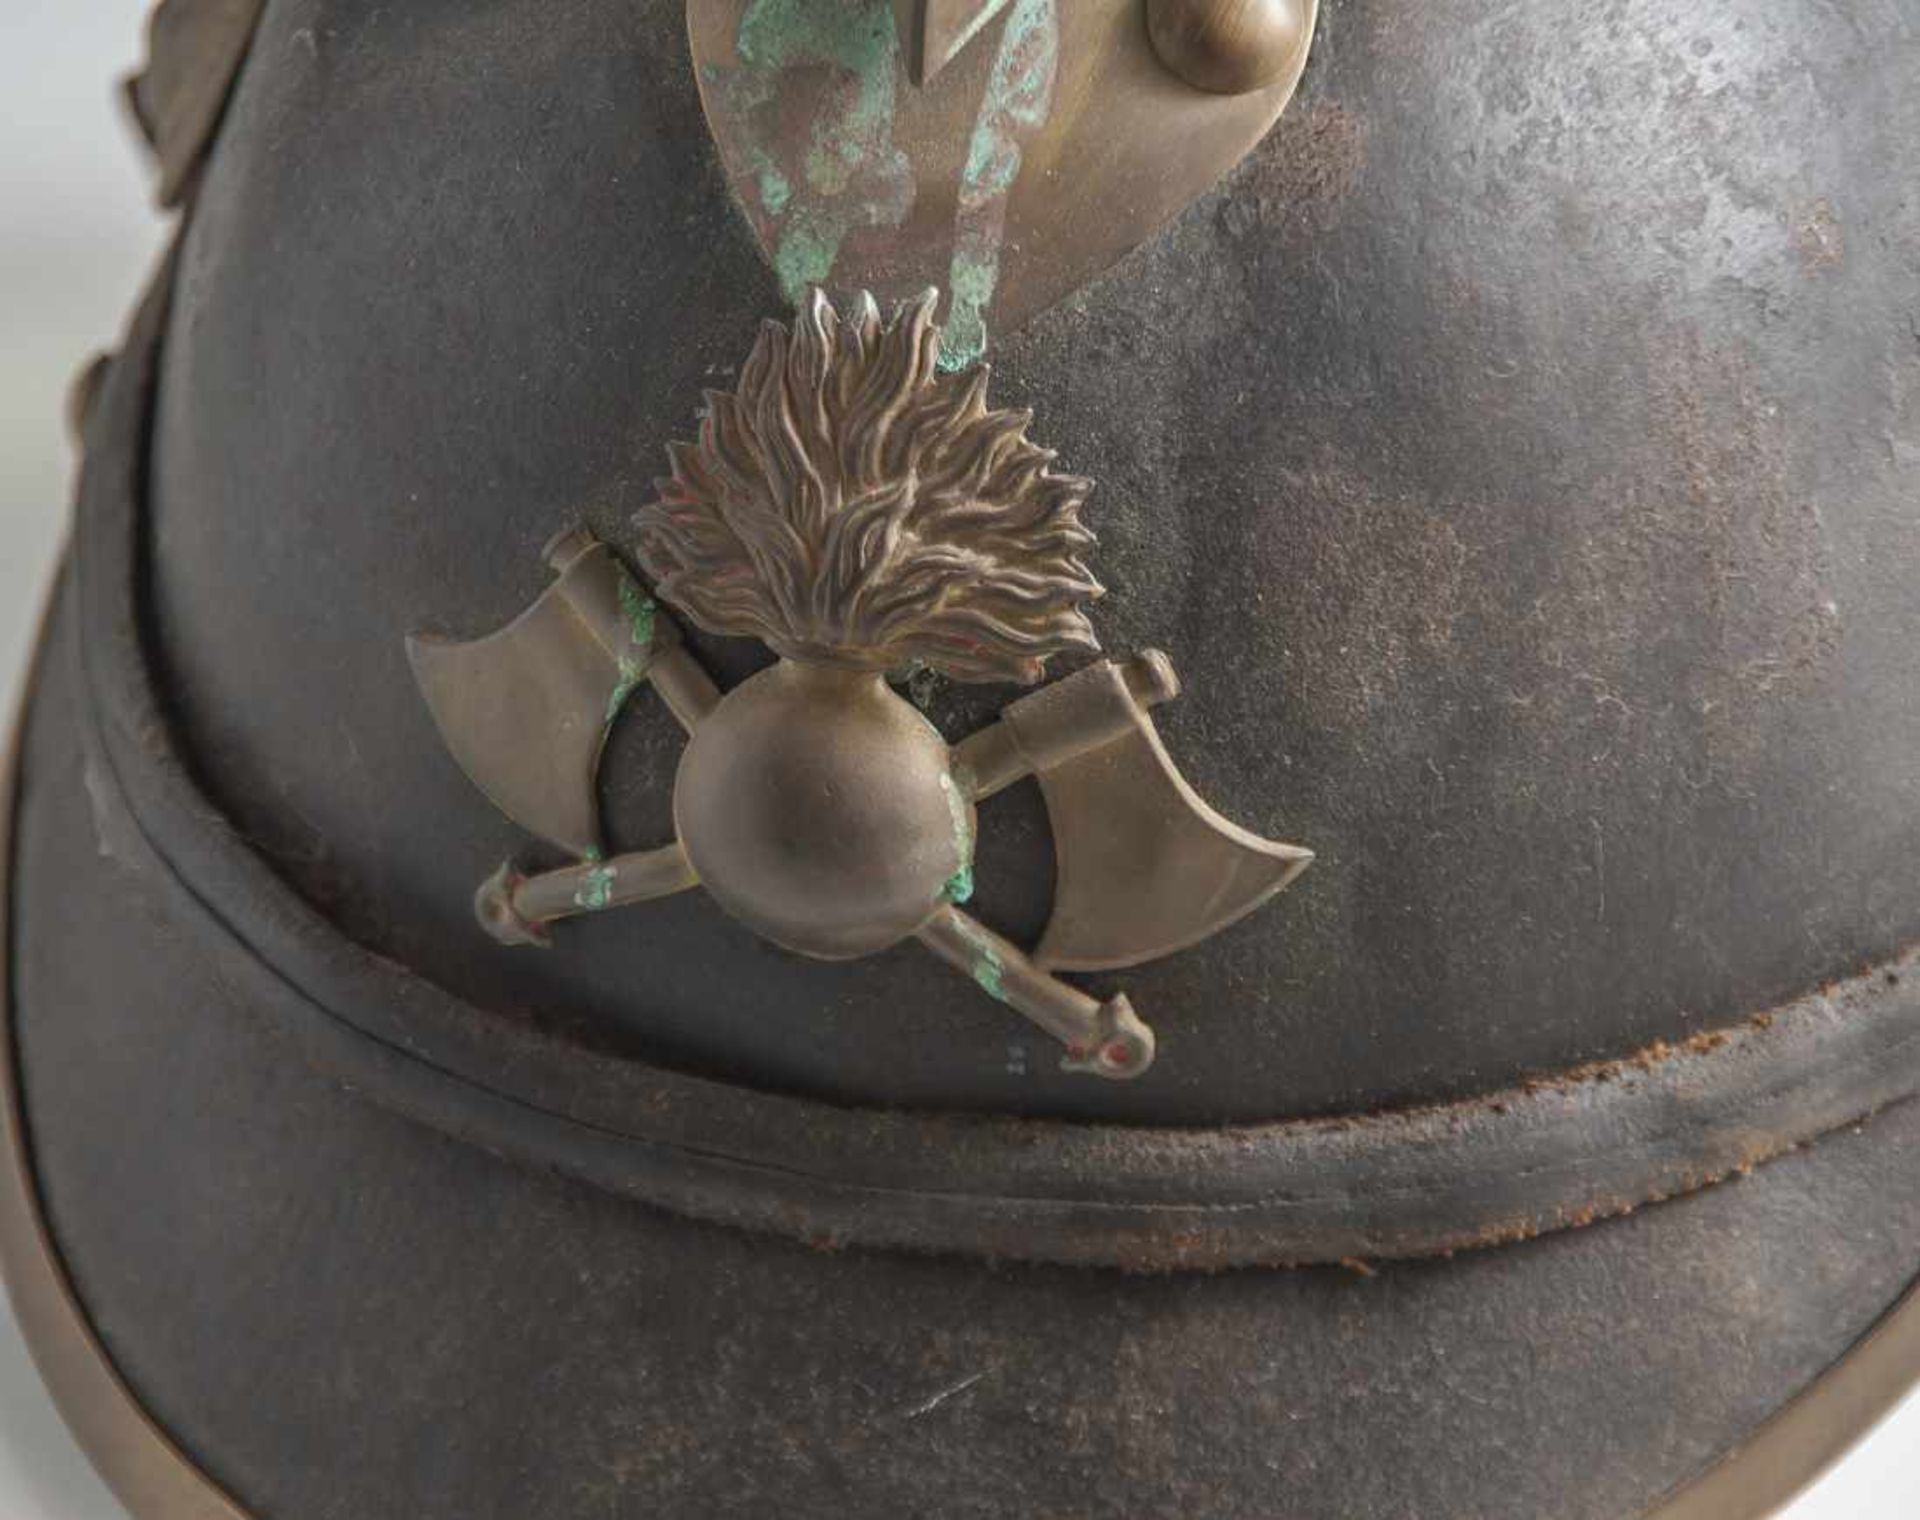 Alter Feuerwehrhelm, 19. Jahrhundert, Lederkorpus mit Metallbeschlägen, ungereinigter Bodenfund. - Image 2 of 3